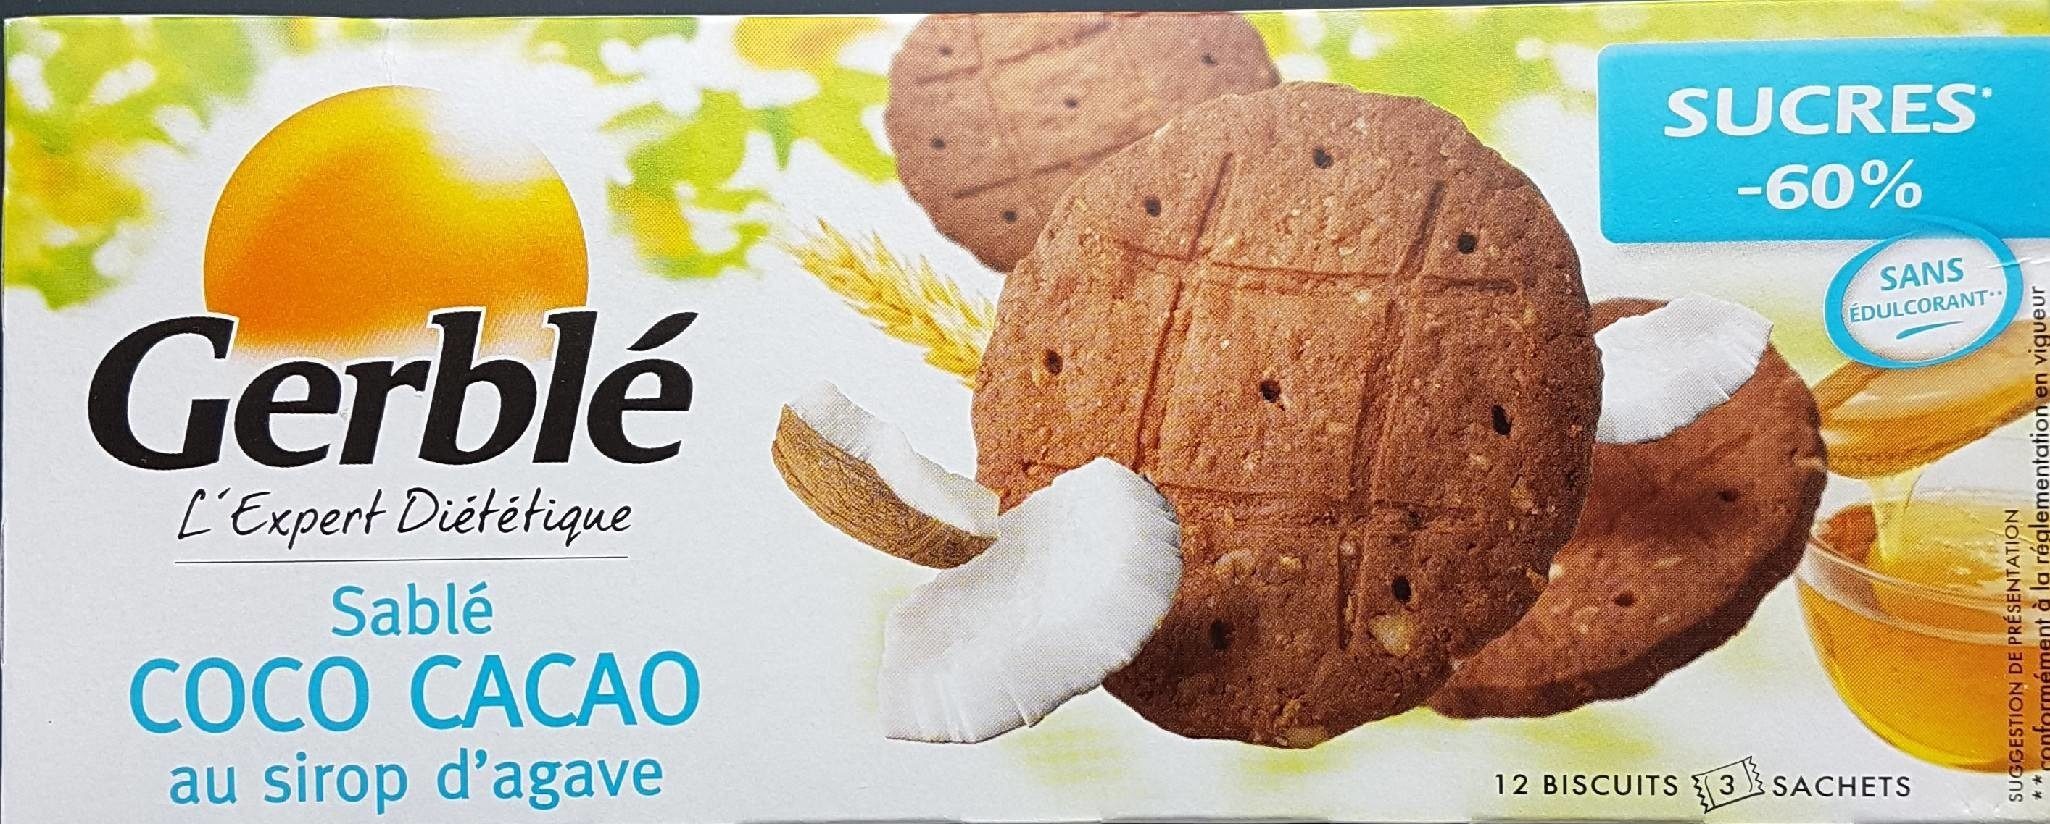 Sablé coco cacao au sirop d'agave - Product - fr